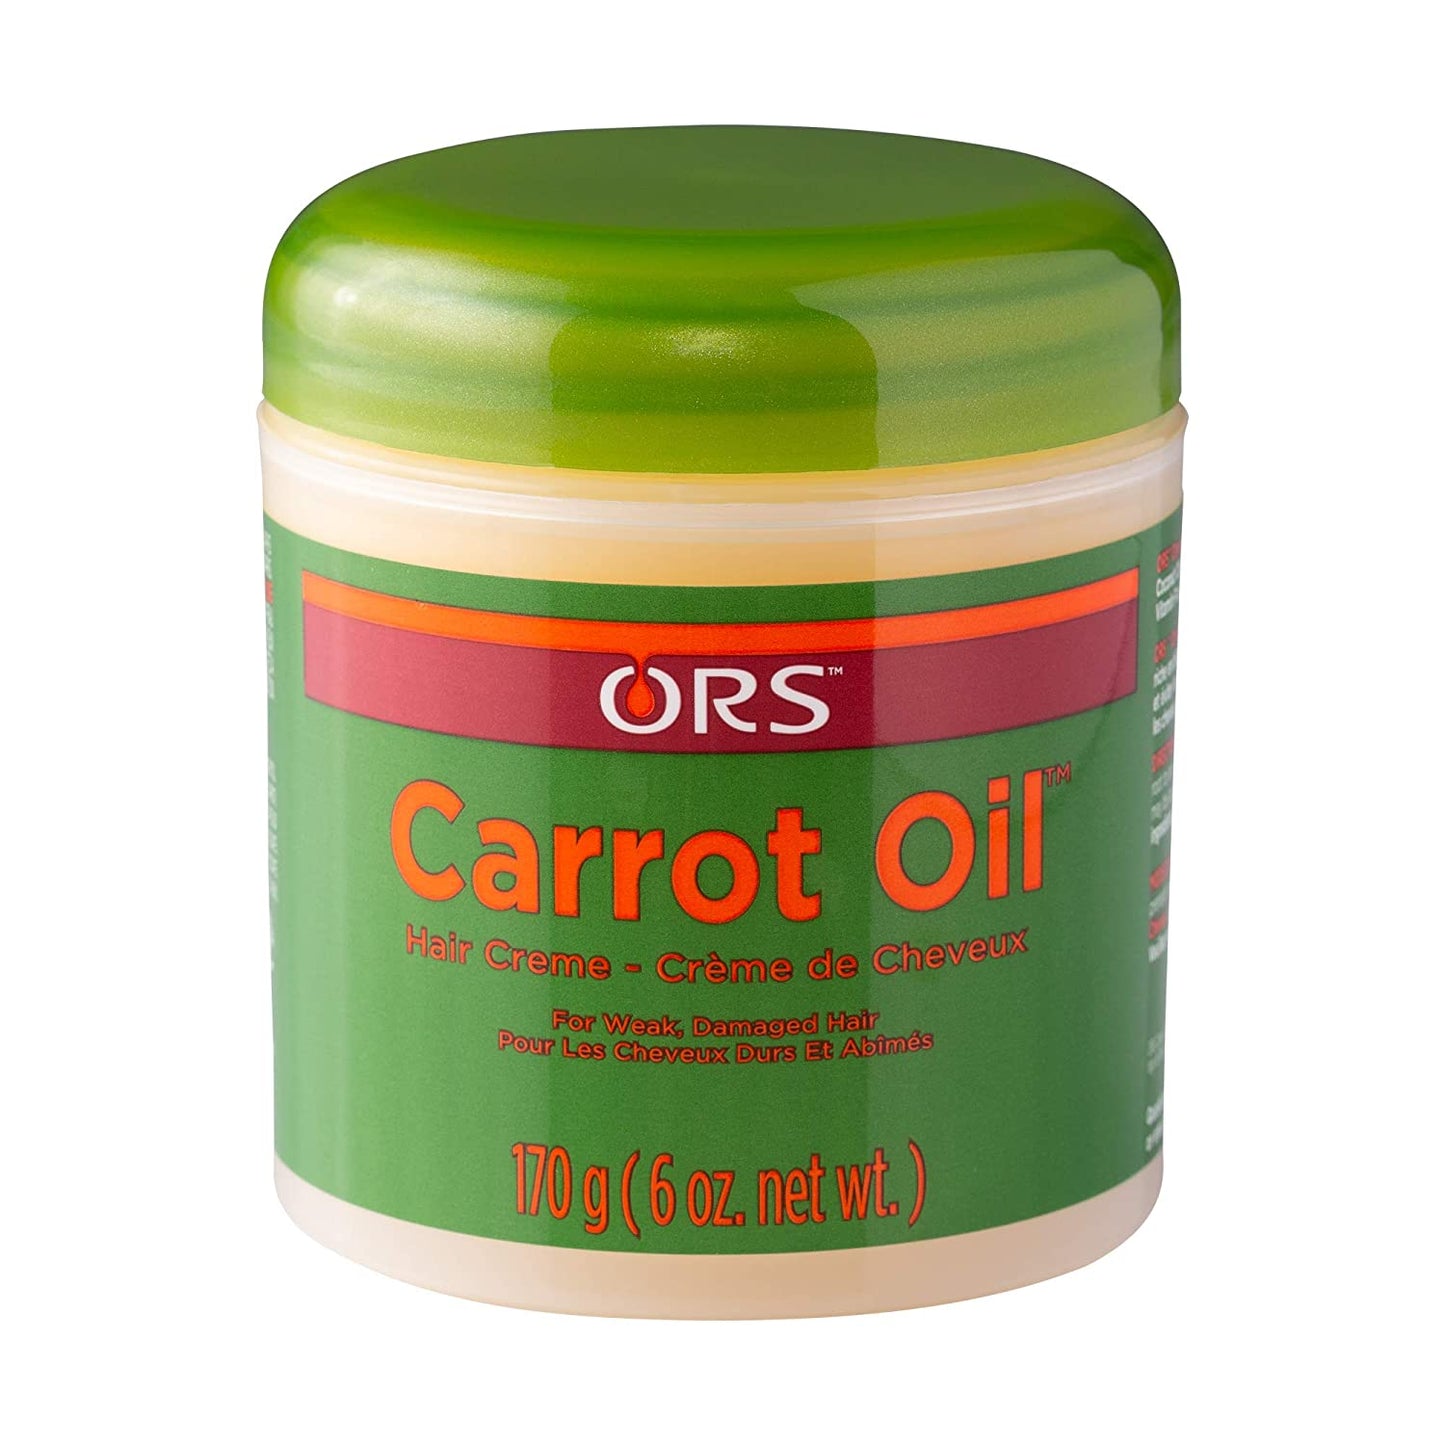 ORS Carrot Oil Hairdress, 6 oz.